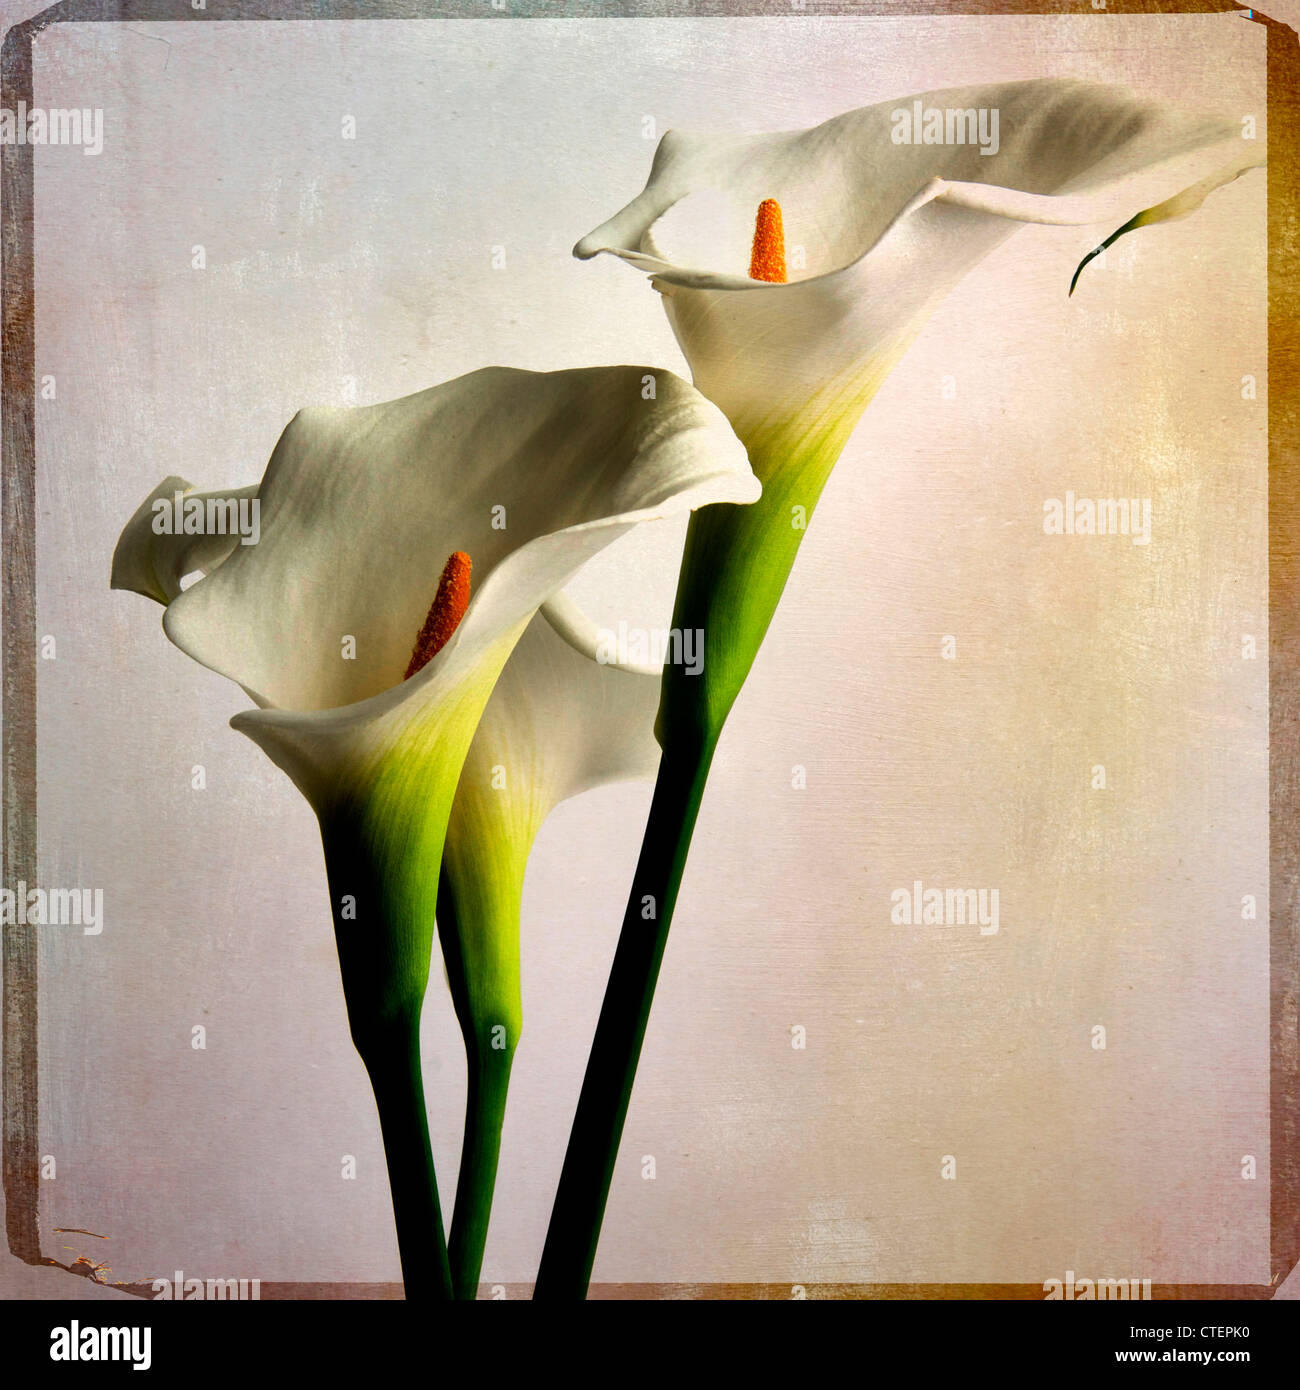 Arum lily fiori, vintage-look - arte testurizzata immagine effetto Foto Stock